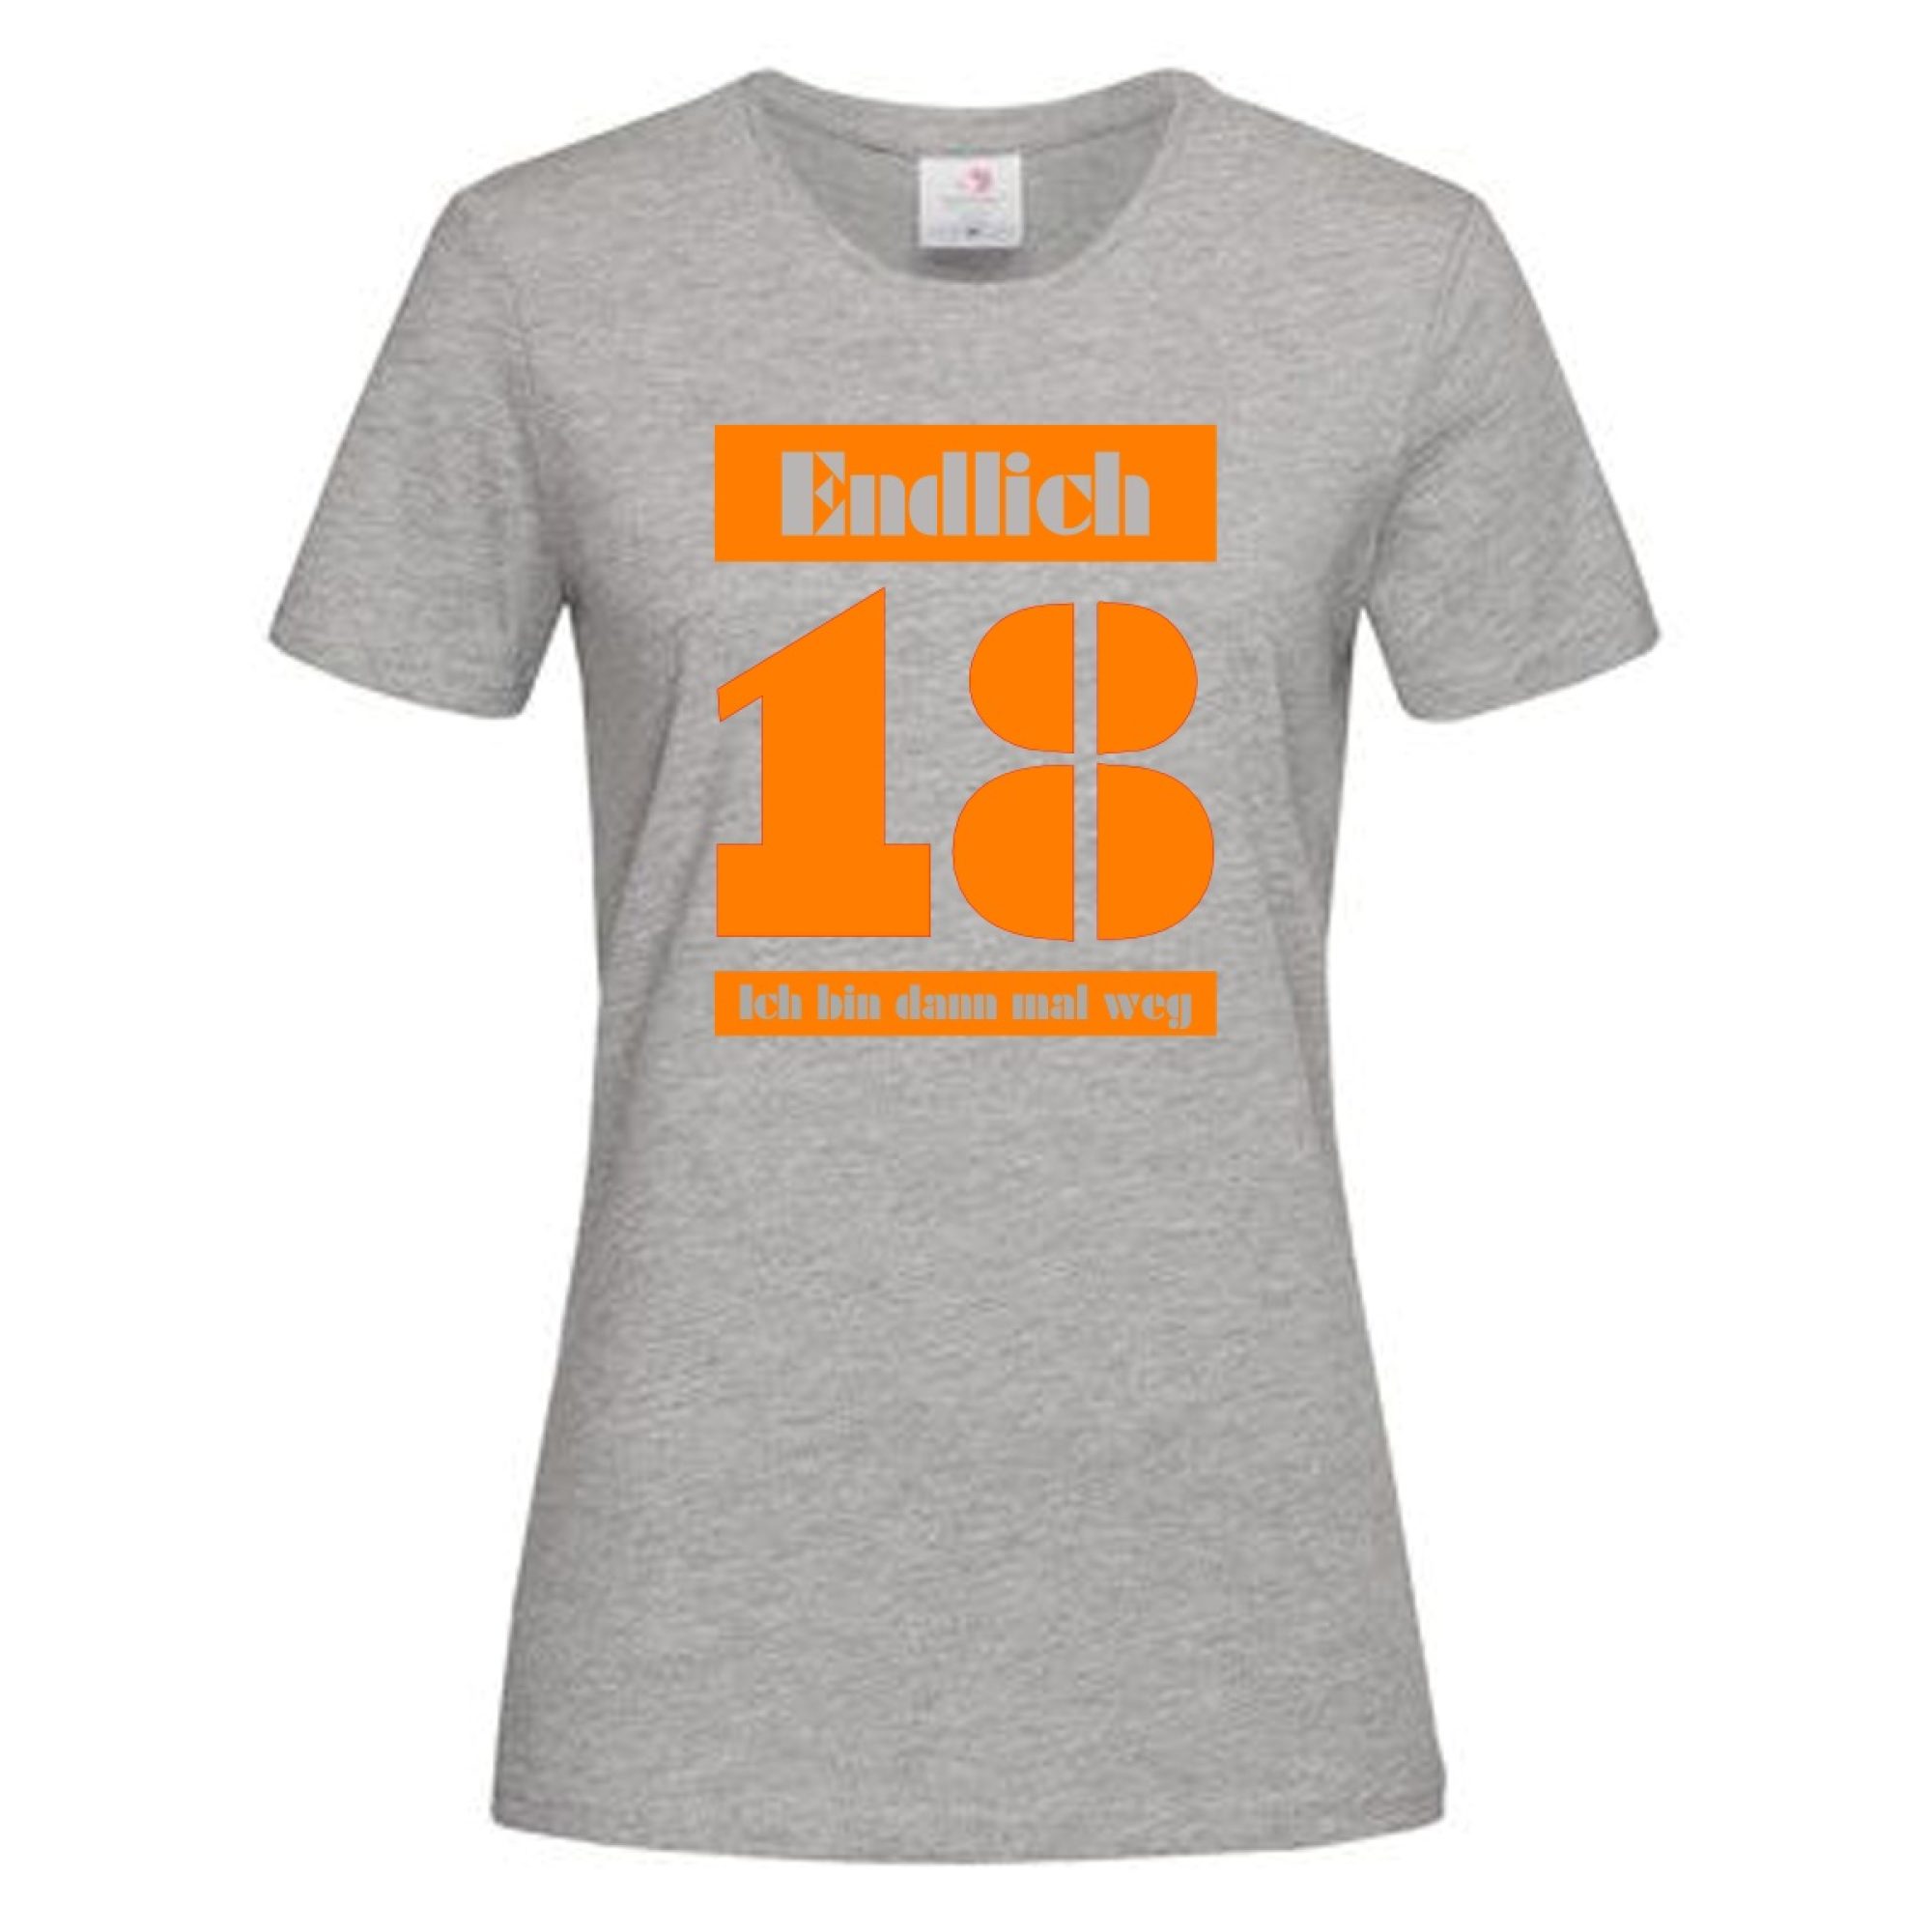 T-Shirt Geburtstag 18 Damen – Endlich 18 Ich bin dann mal weg